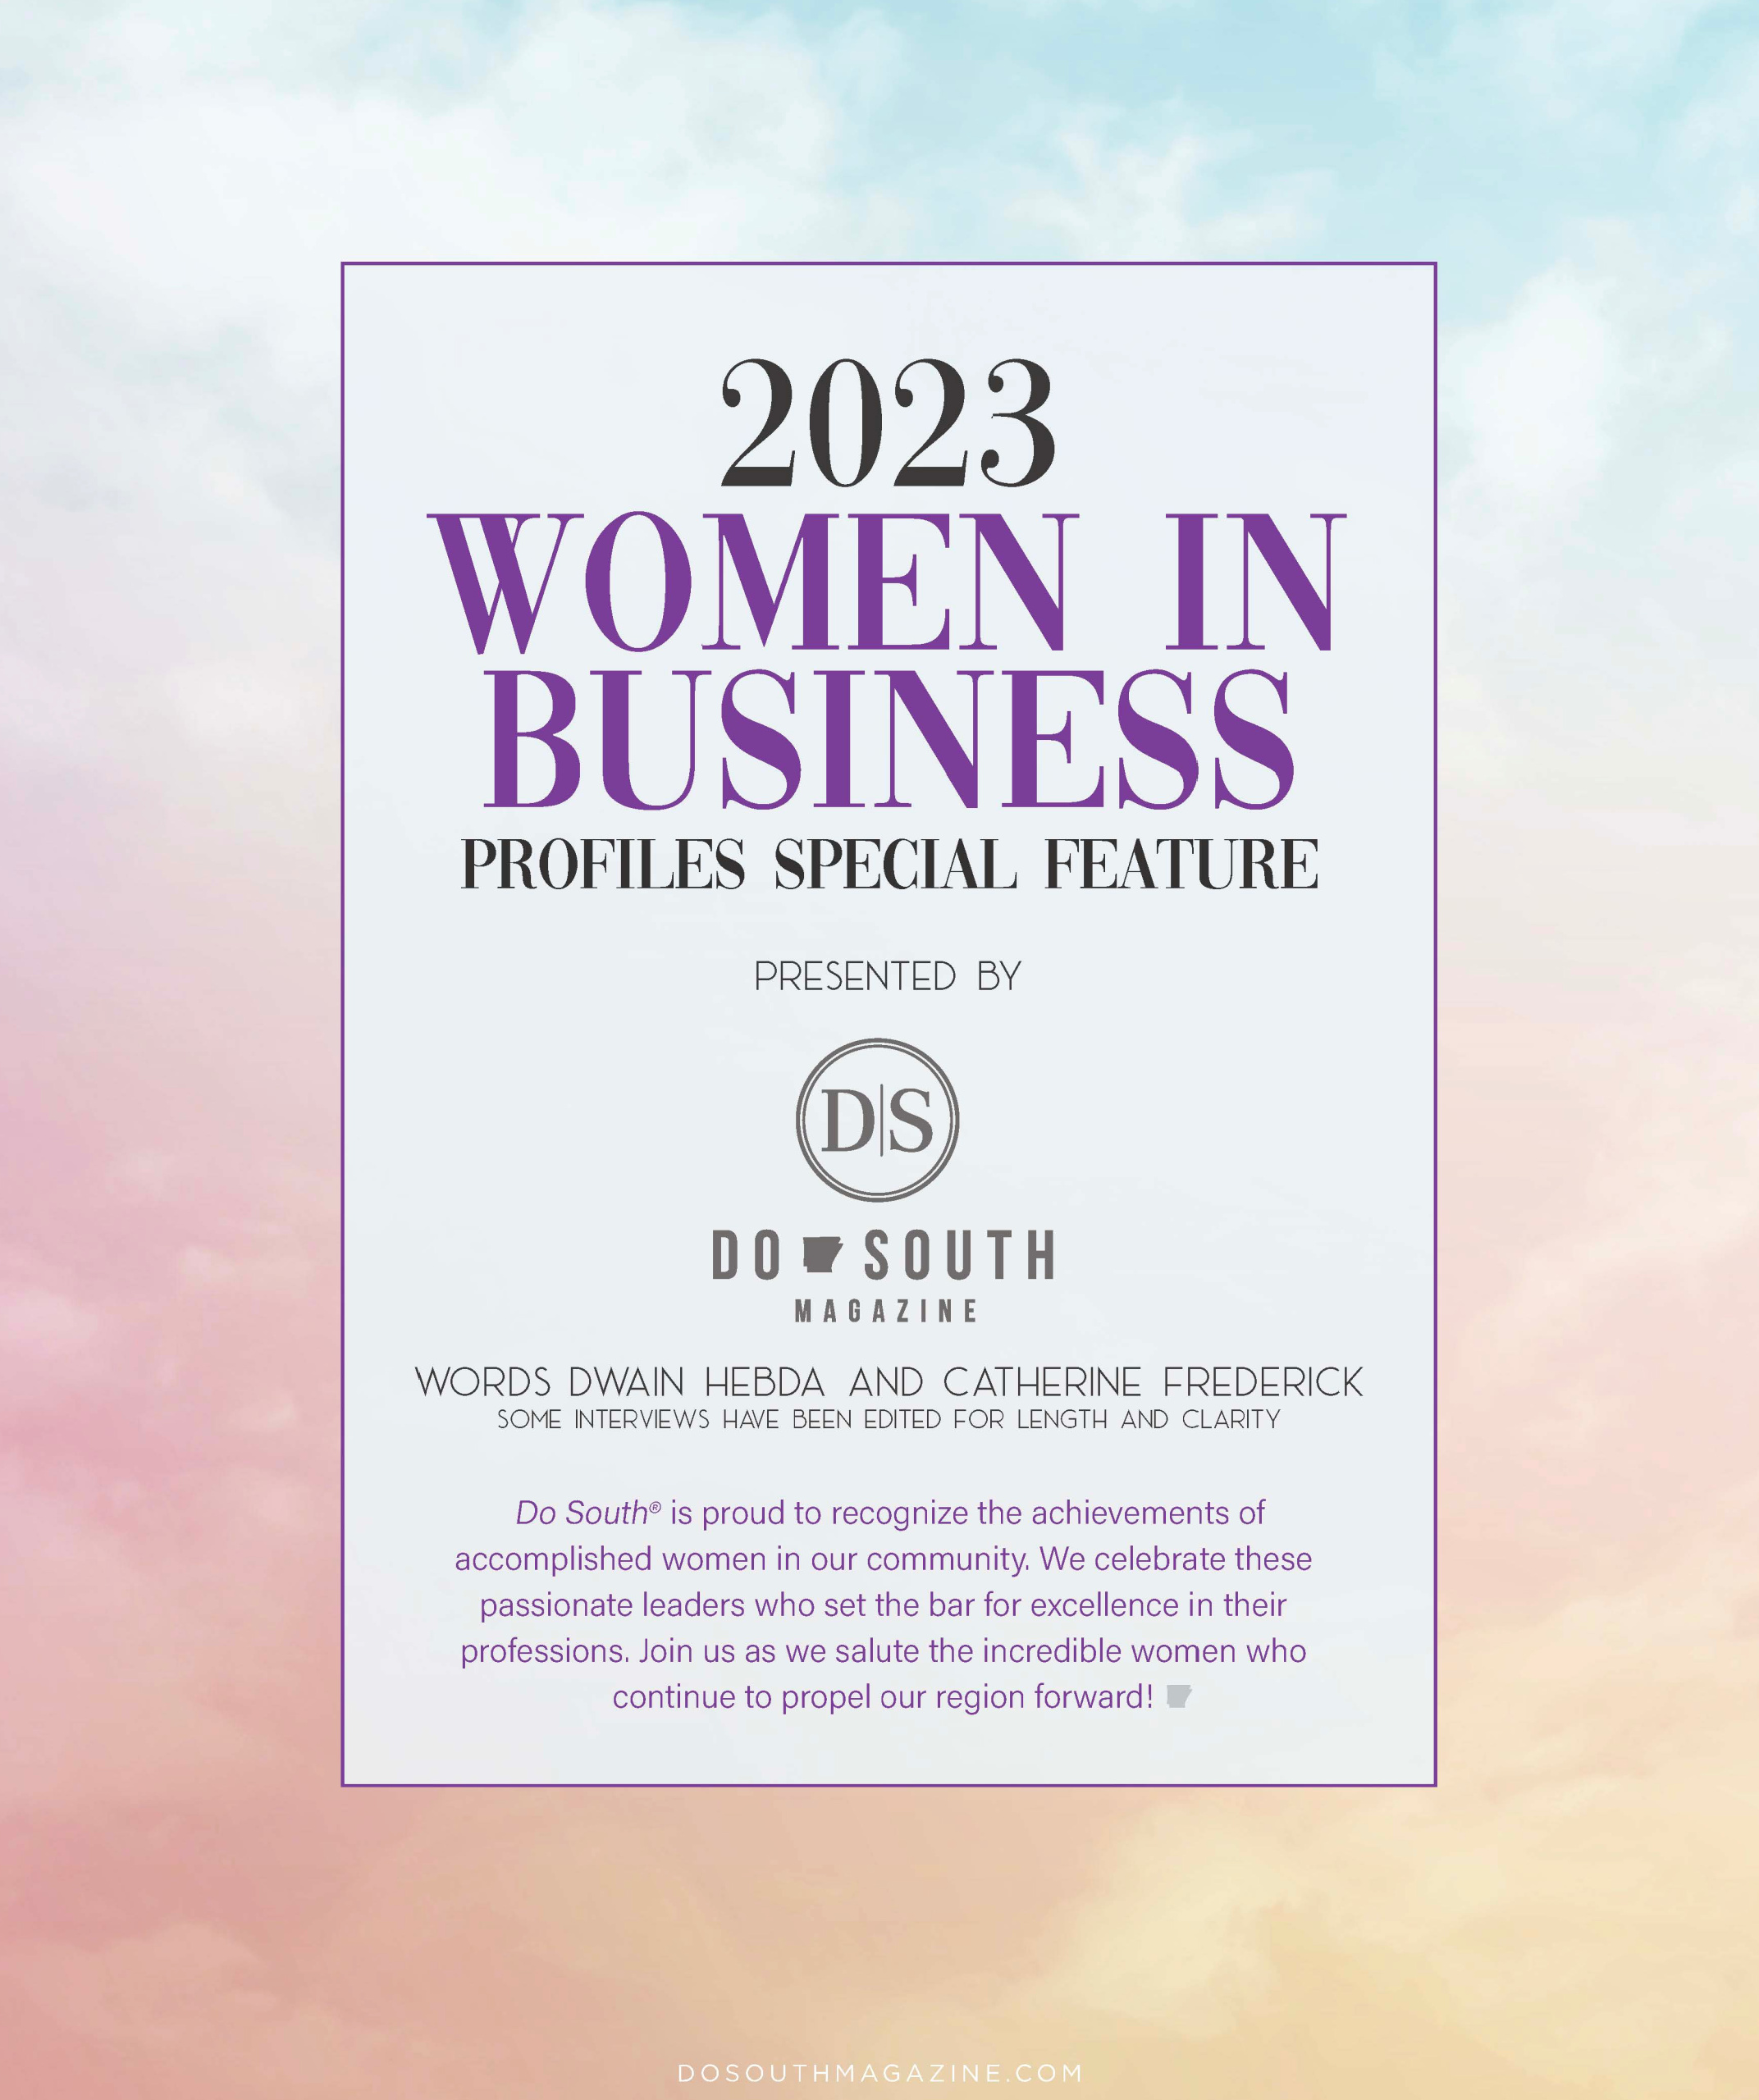 WOMEN IN BUSINESS MARCH 2023